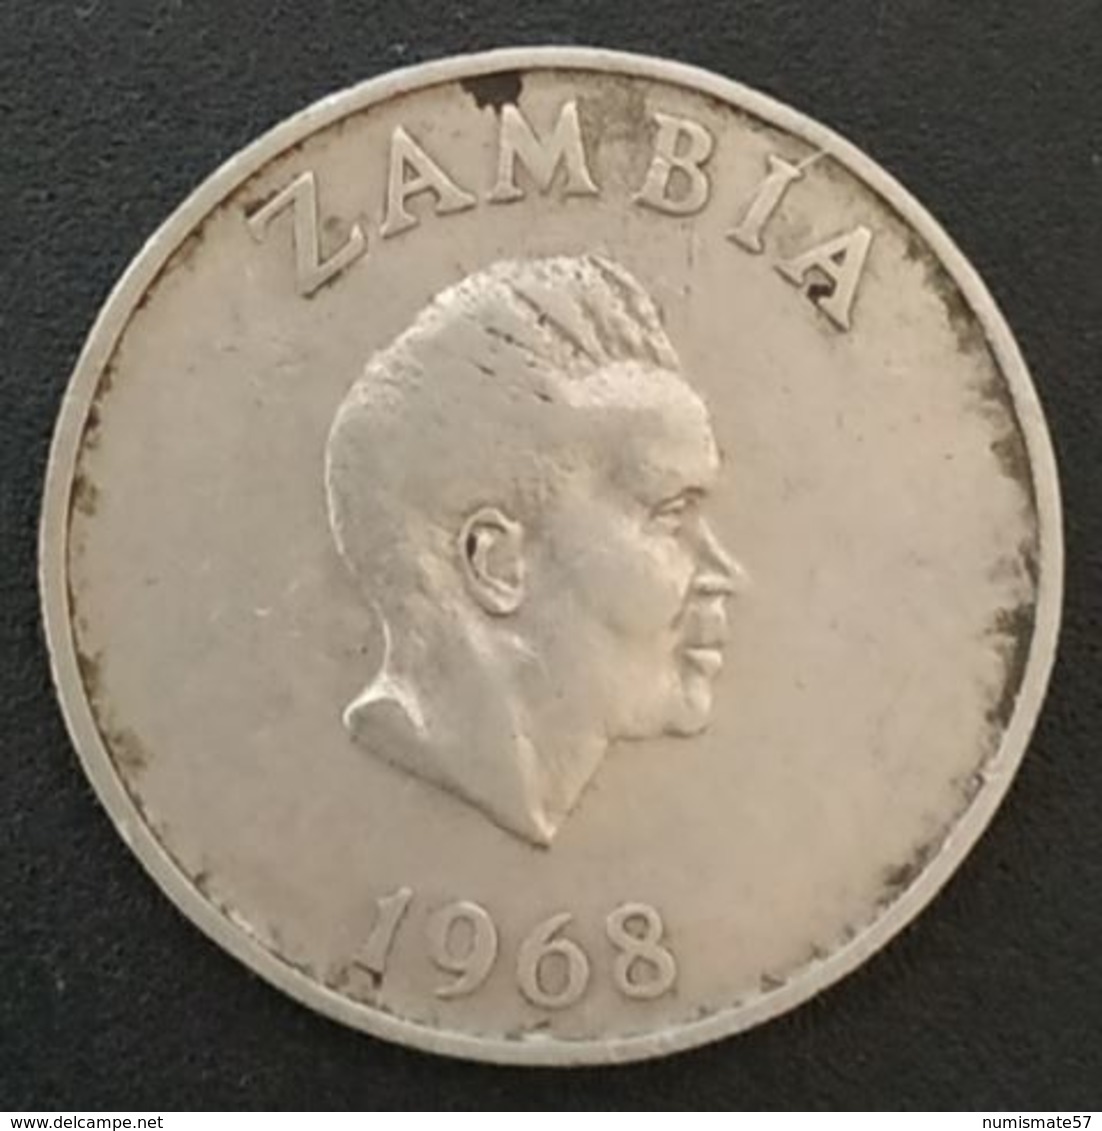 ZAMBIE - ZAMBIA - 10 - TEN NGWEE 1968 - KM 12 - Calao Couronné - Zambie